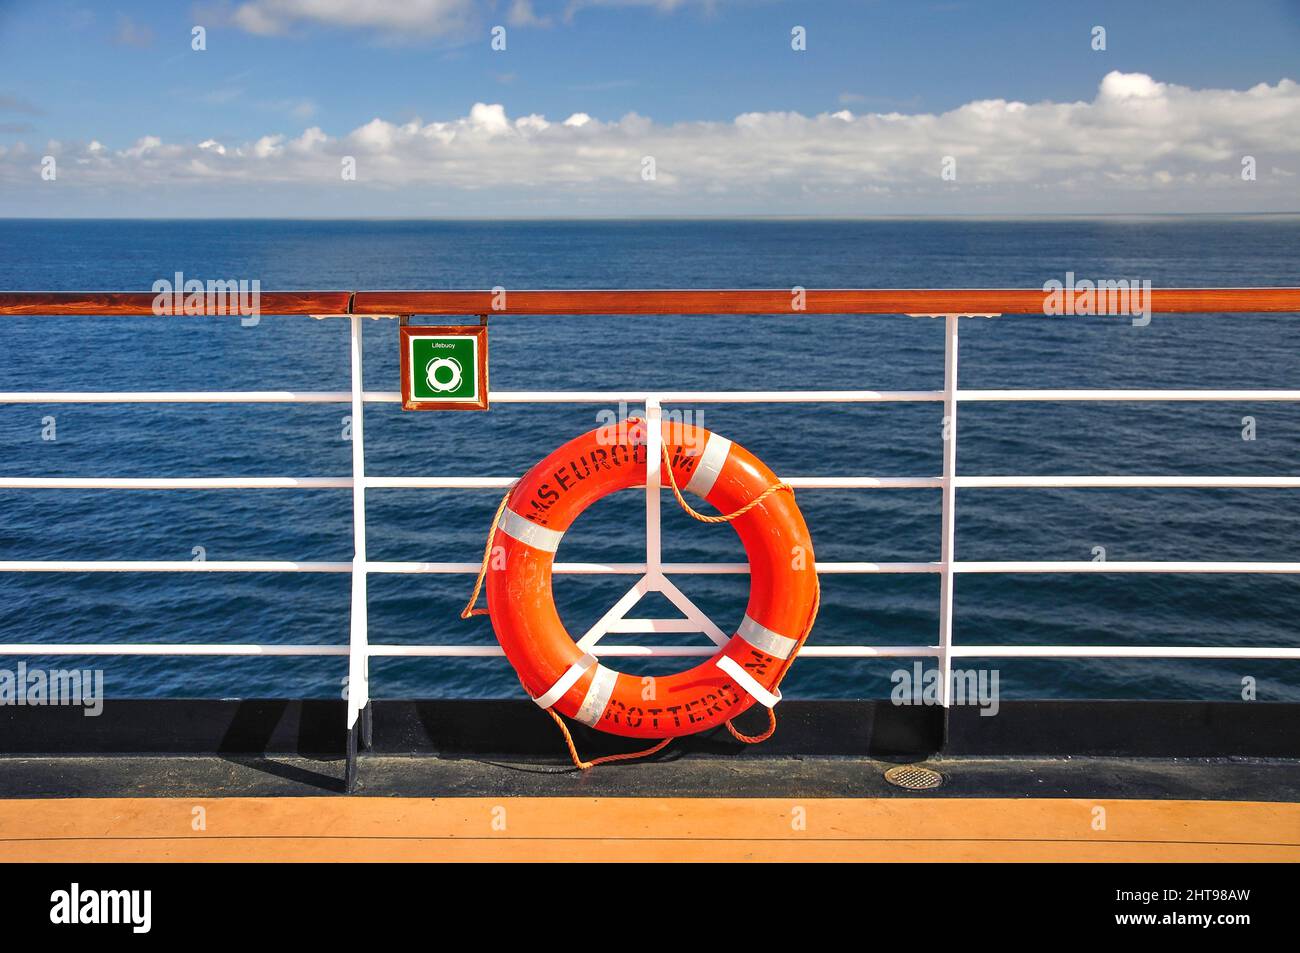 Barandas y boya salvavidas en cubierta, MS Eurodam Cruise Ship, Mar del Norte, Europa Foto de stock